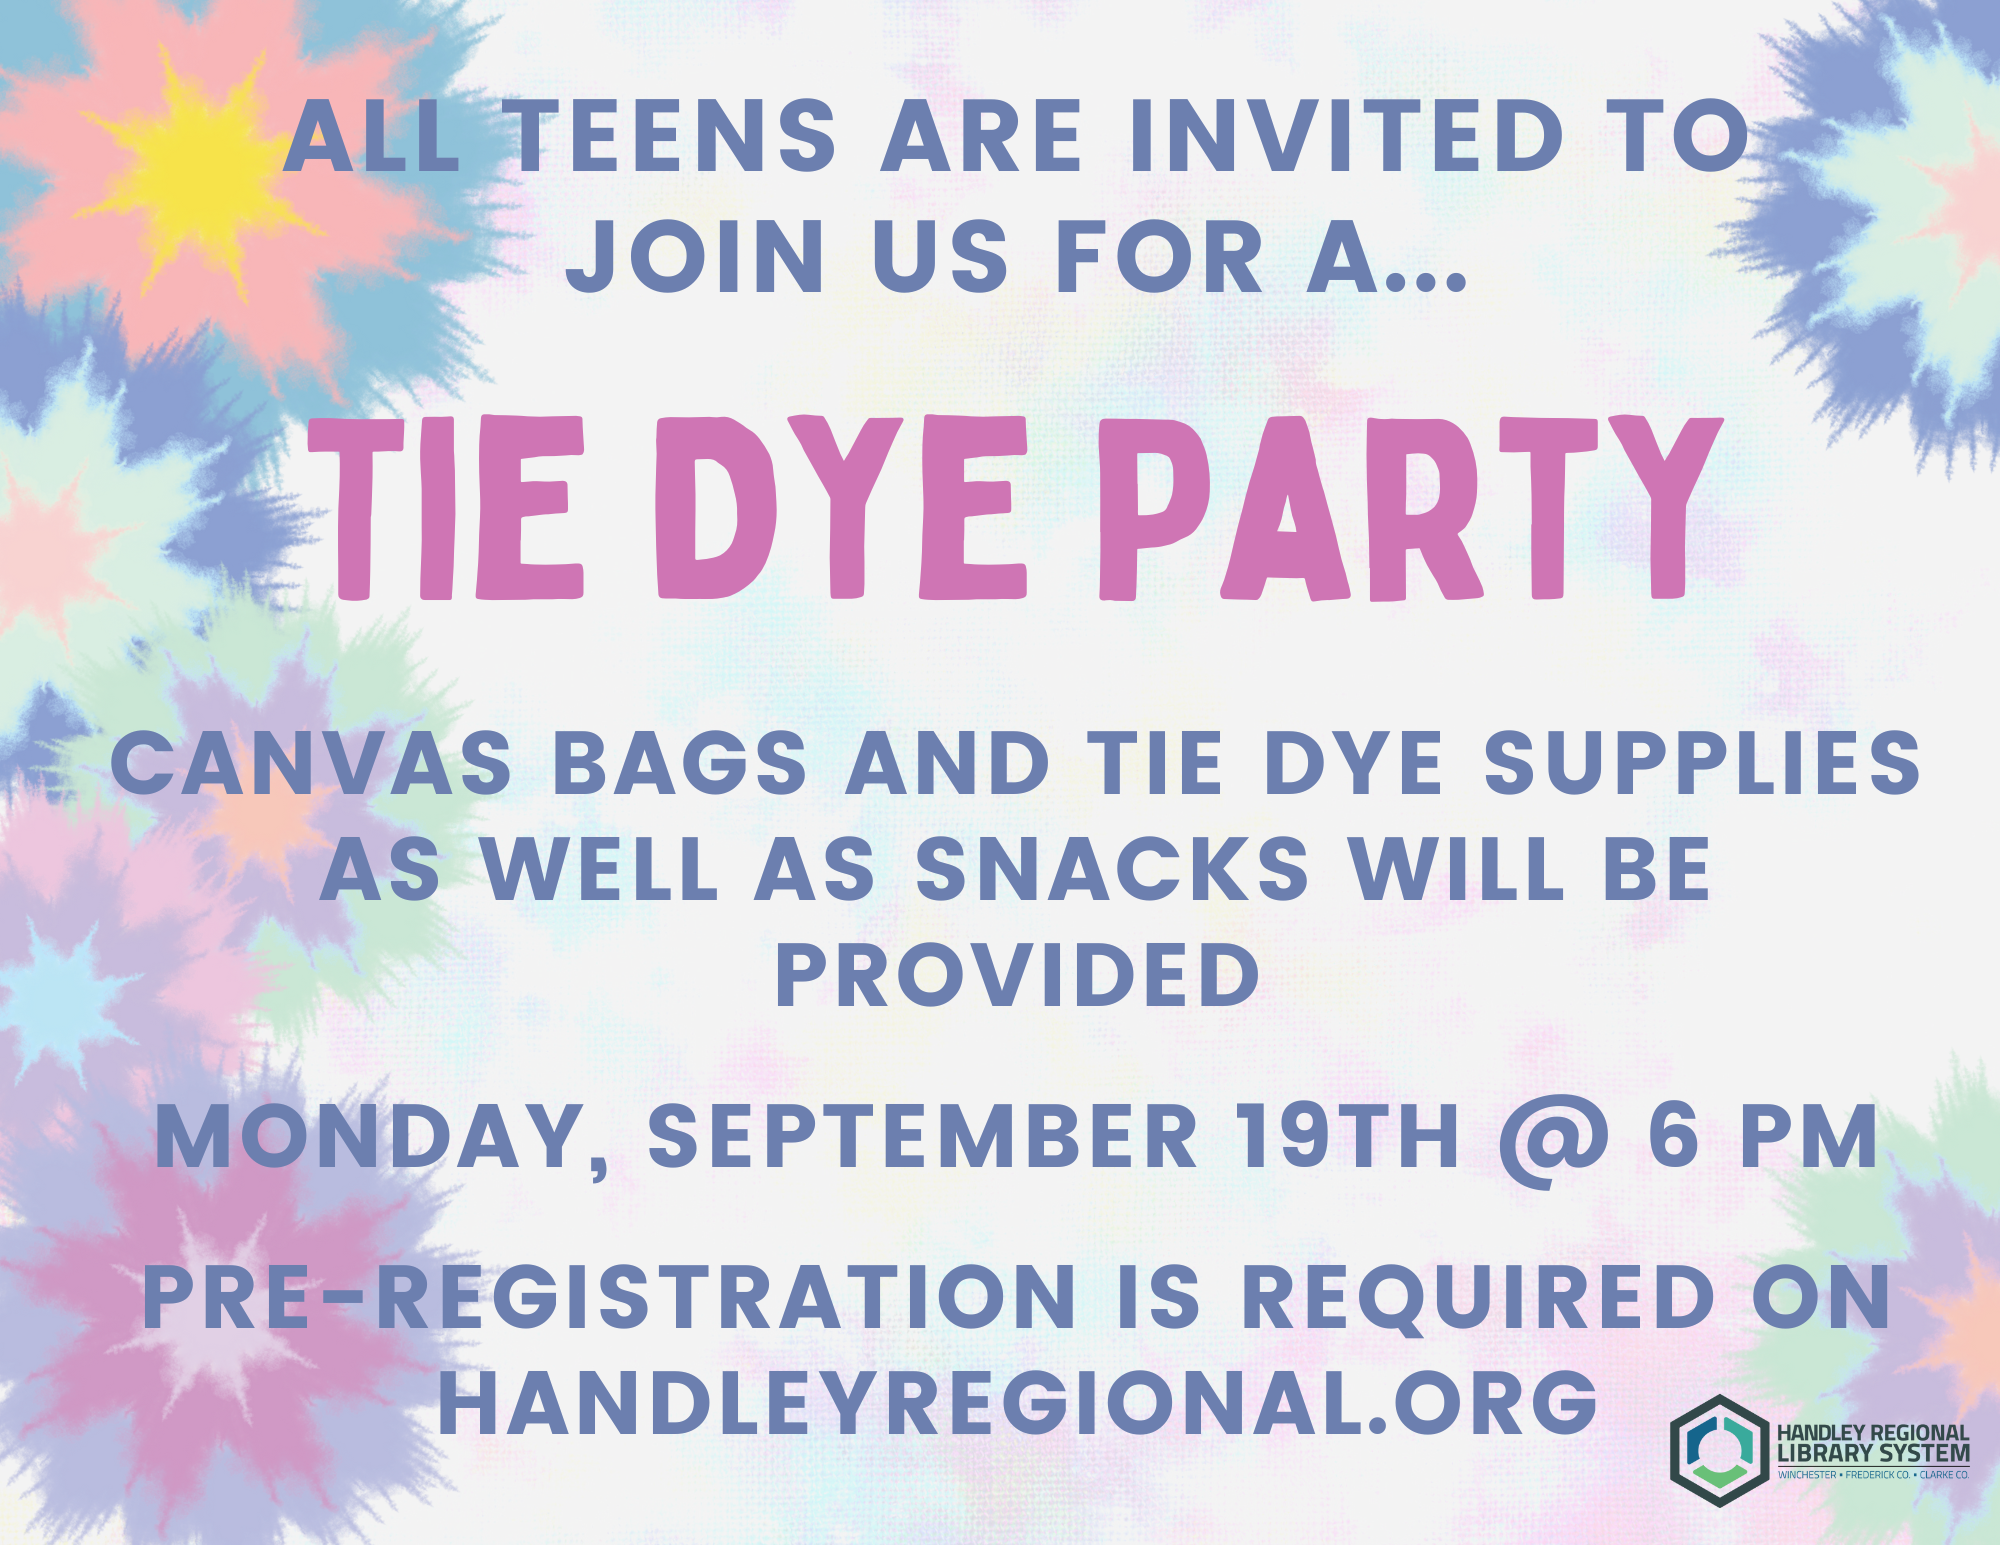 Teen Tie Dye Party